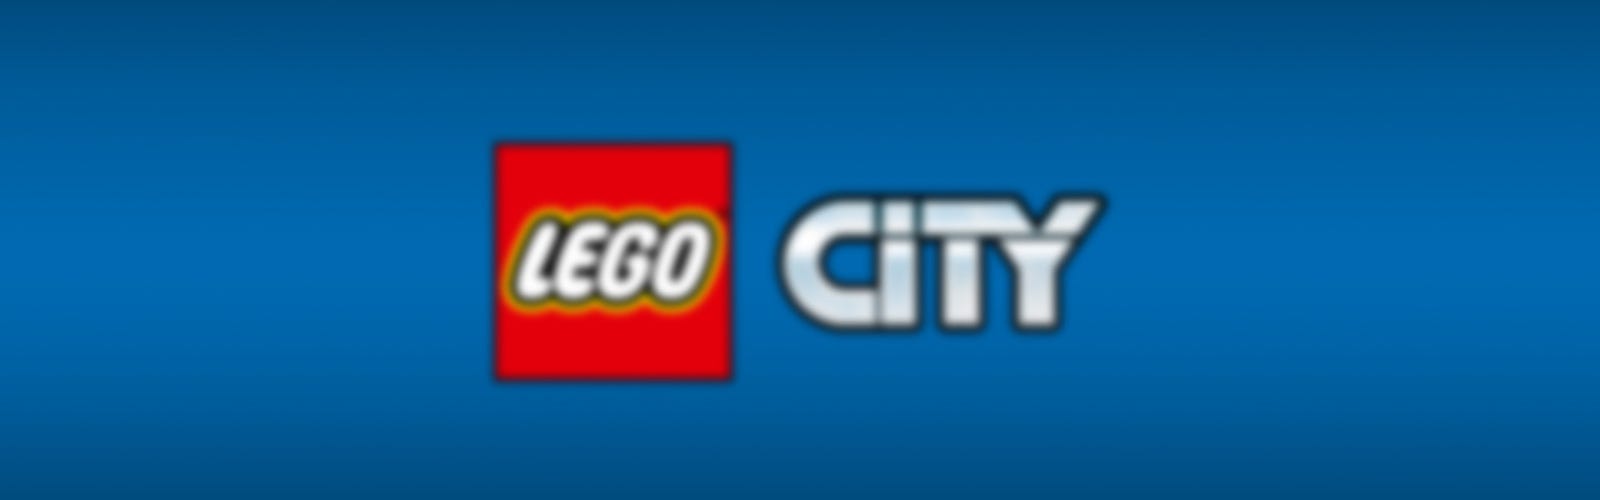 LEGO City 60353 Mission de sauvetage des animaux sauvages? Jouet de  Construction Interactif avec Briques, Camion, Figurines Animales et 3  Minifigurines pas cher 